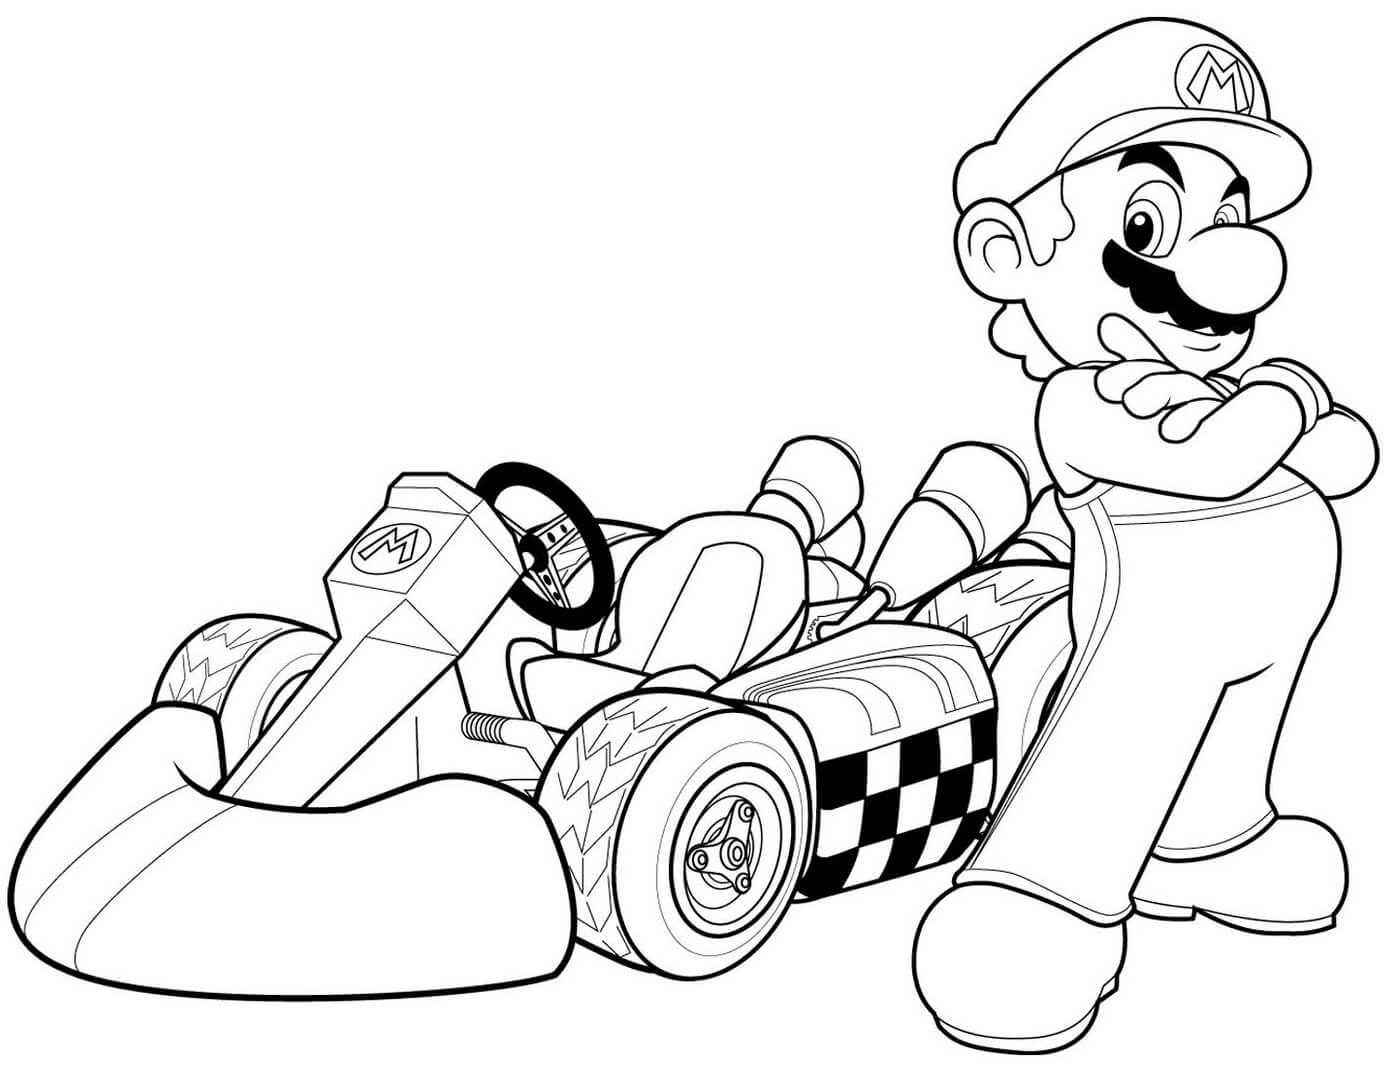 Mario in Mario Kart Wii